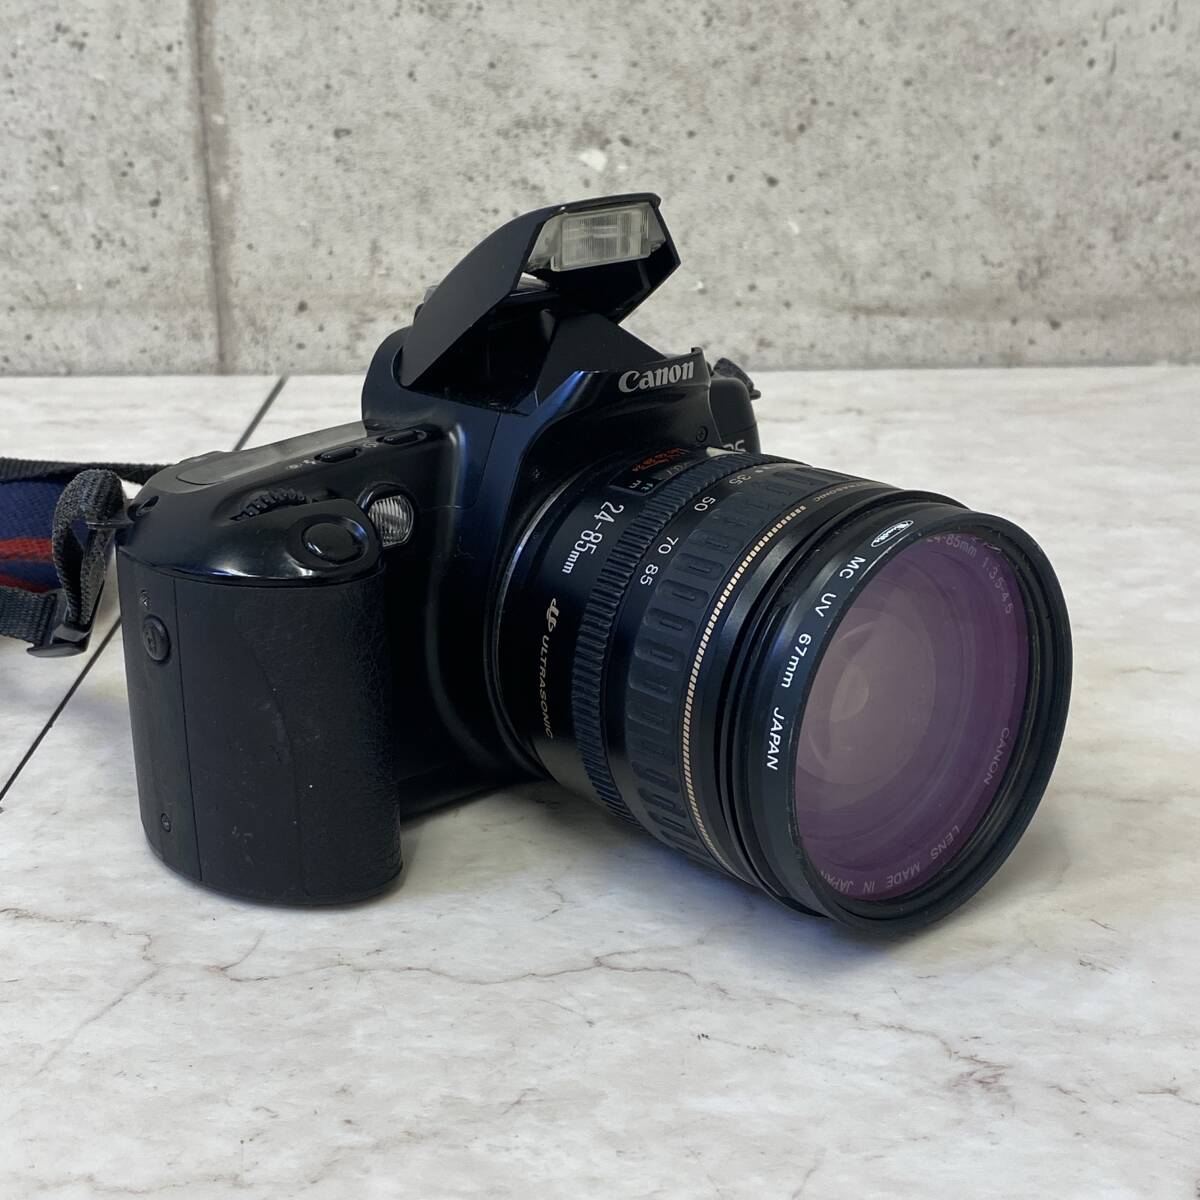  【値下げ 送料無料】 フィルム一眼レフカメラ CANON EOS500 初代EOS KISS 欧州向け輸出モデル レンズ付 電池交換済 動作品 現状品 A410-2_画像1